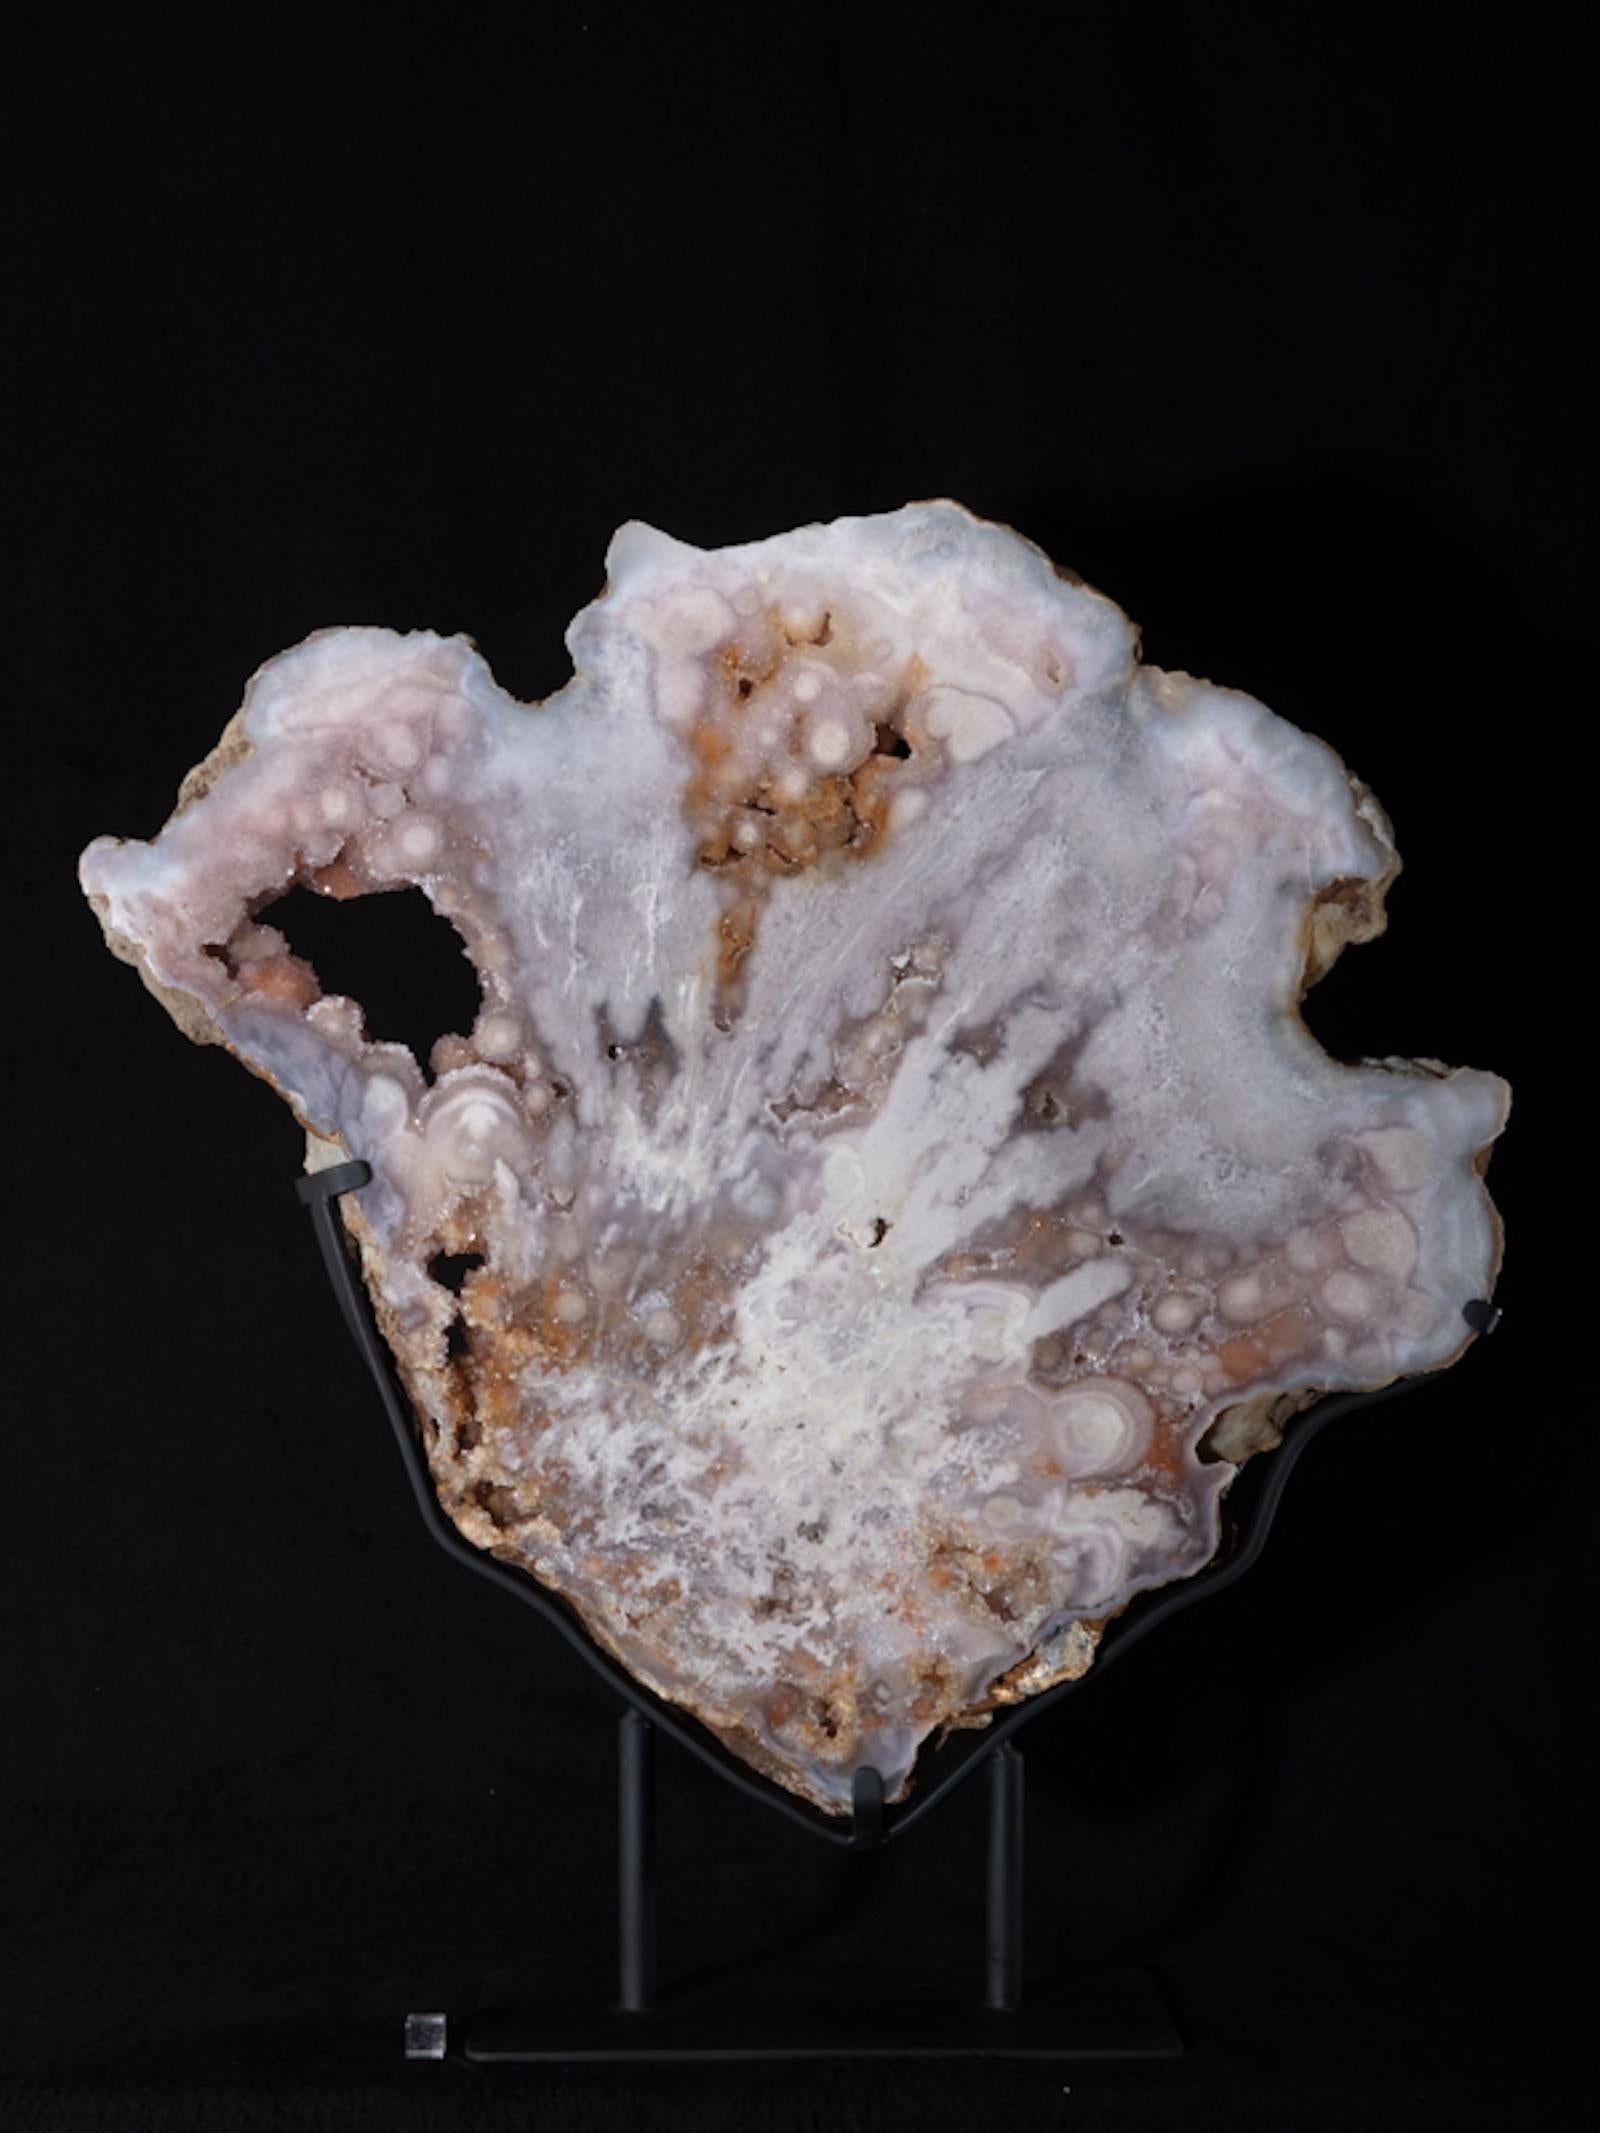 Amethyst ist ein Quarz, der Spuren von Manganoxid enthält, die für die violette Farbe verantwortlich sind. Amethyst ist in der Regel in Hohlräumen von Vulkangestein zu finden und kommt auch in Erzgängen vor. Der Name Amethyst stammt aus dem